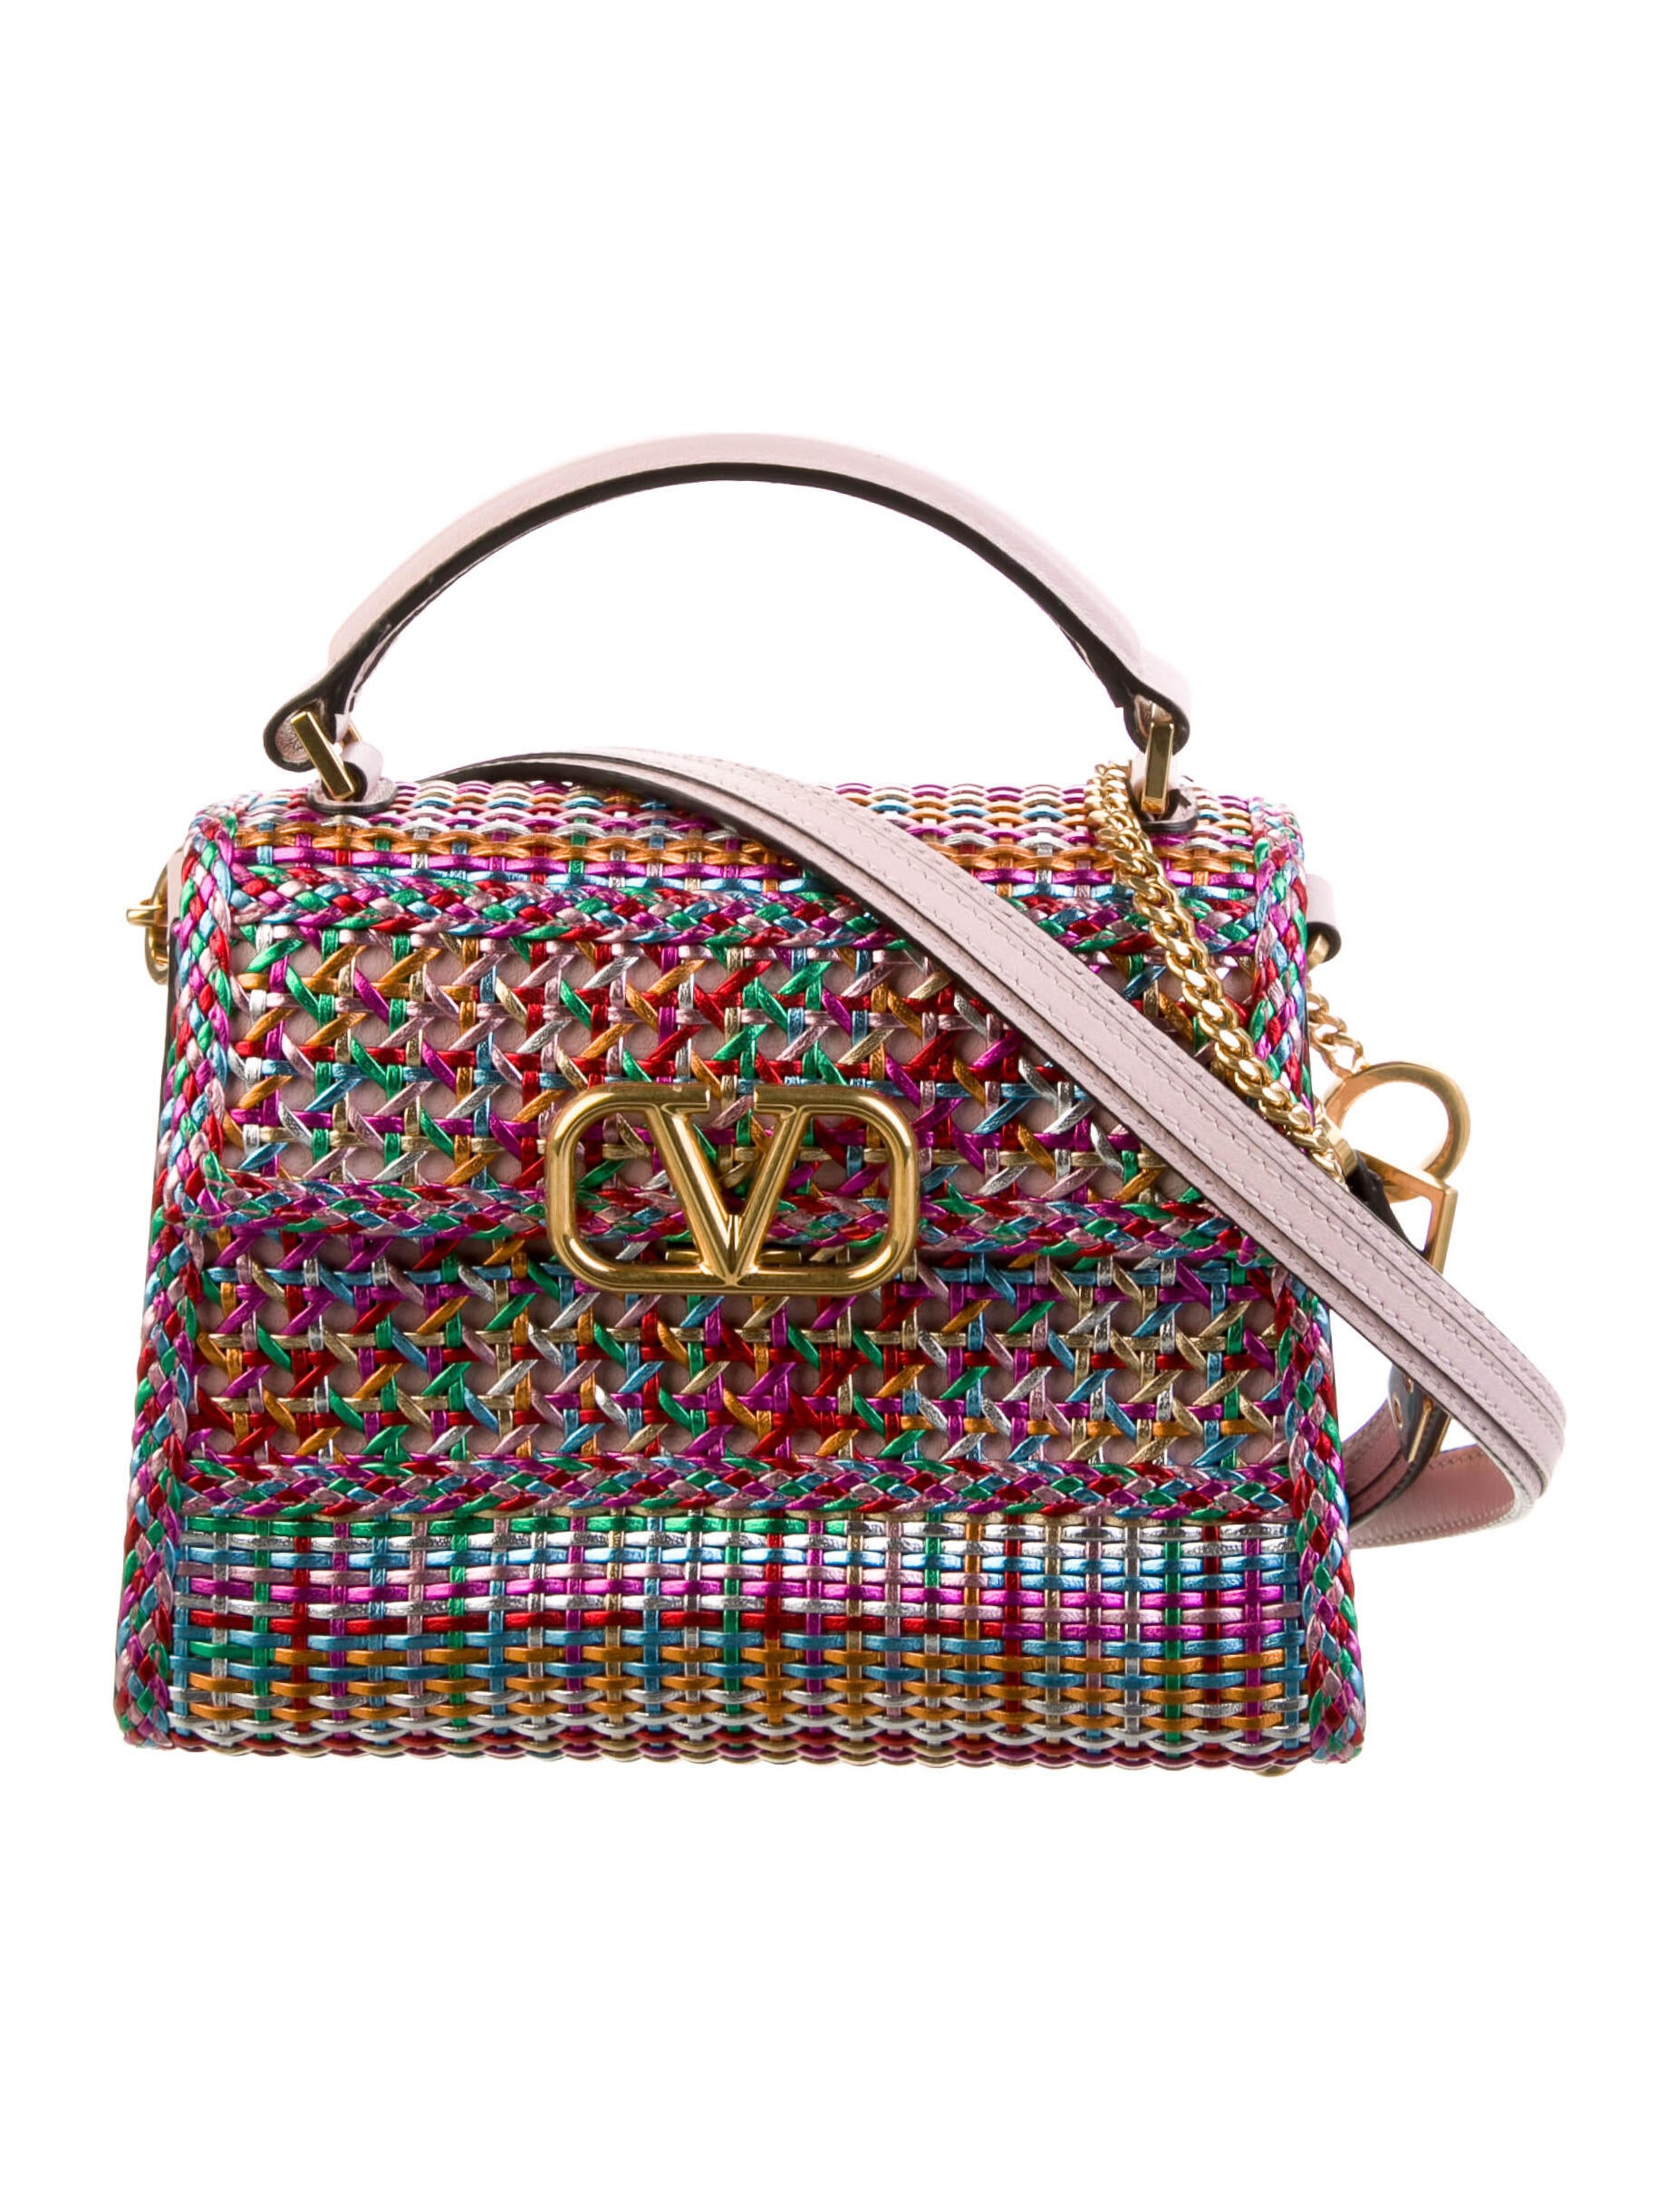 VSLING Mini Crystal-Embellished Top-Handle Bag